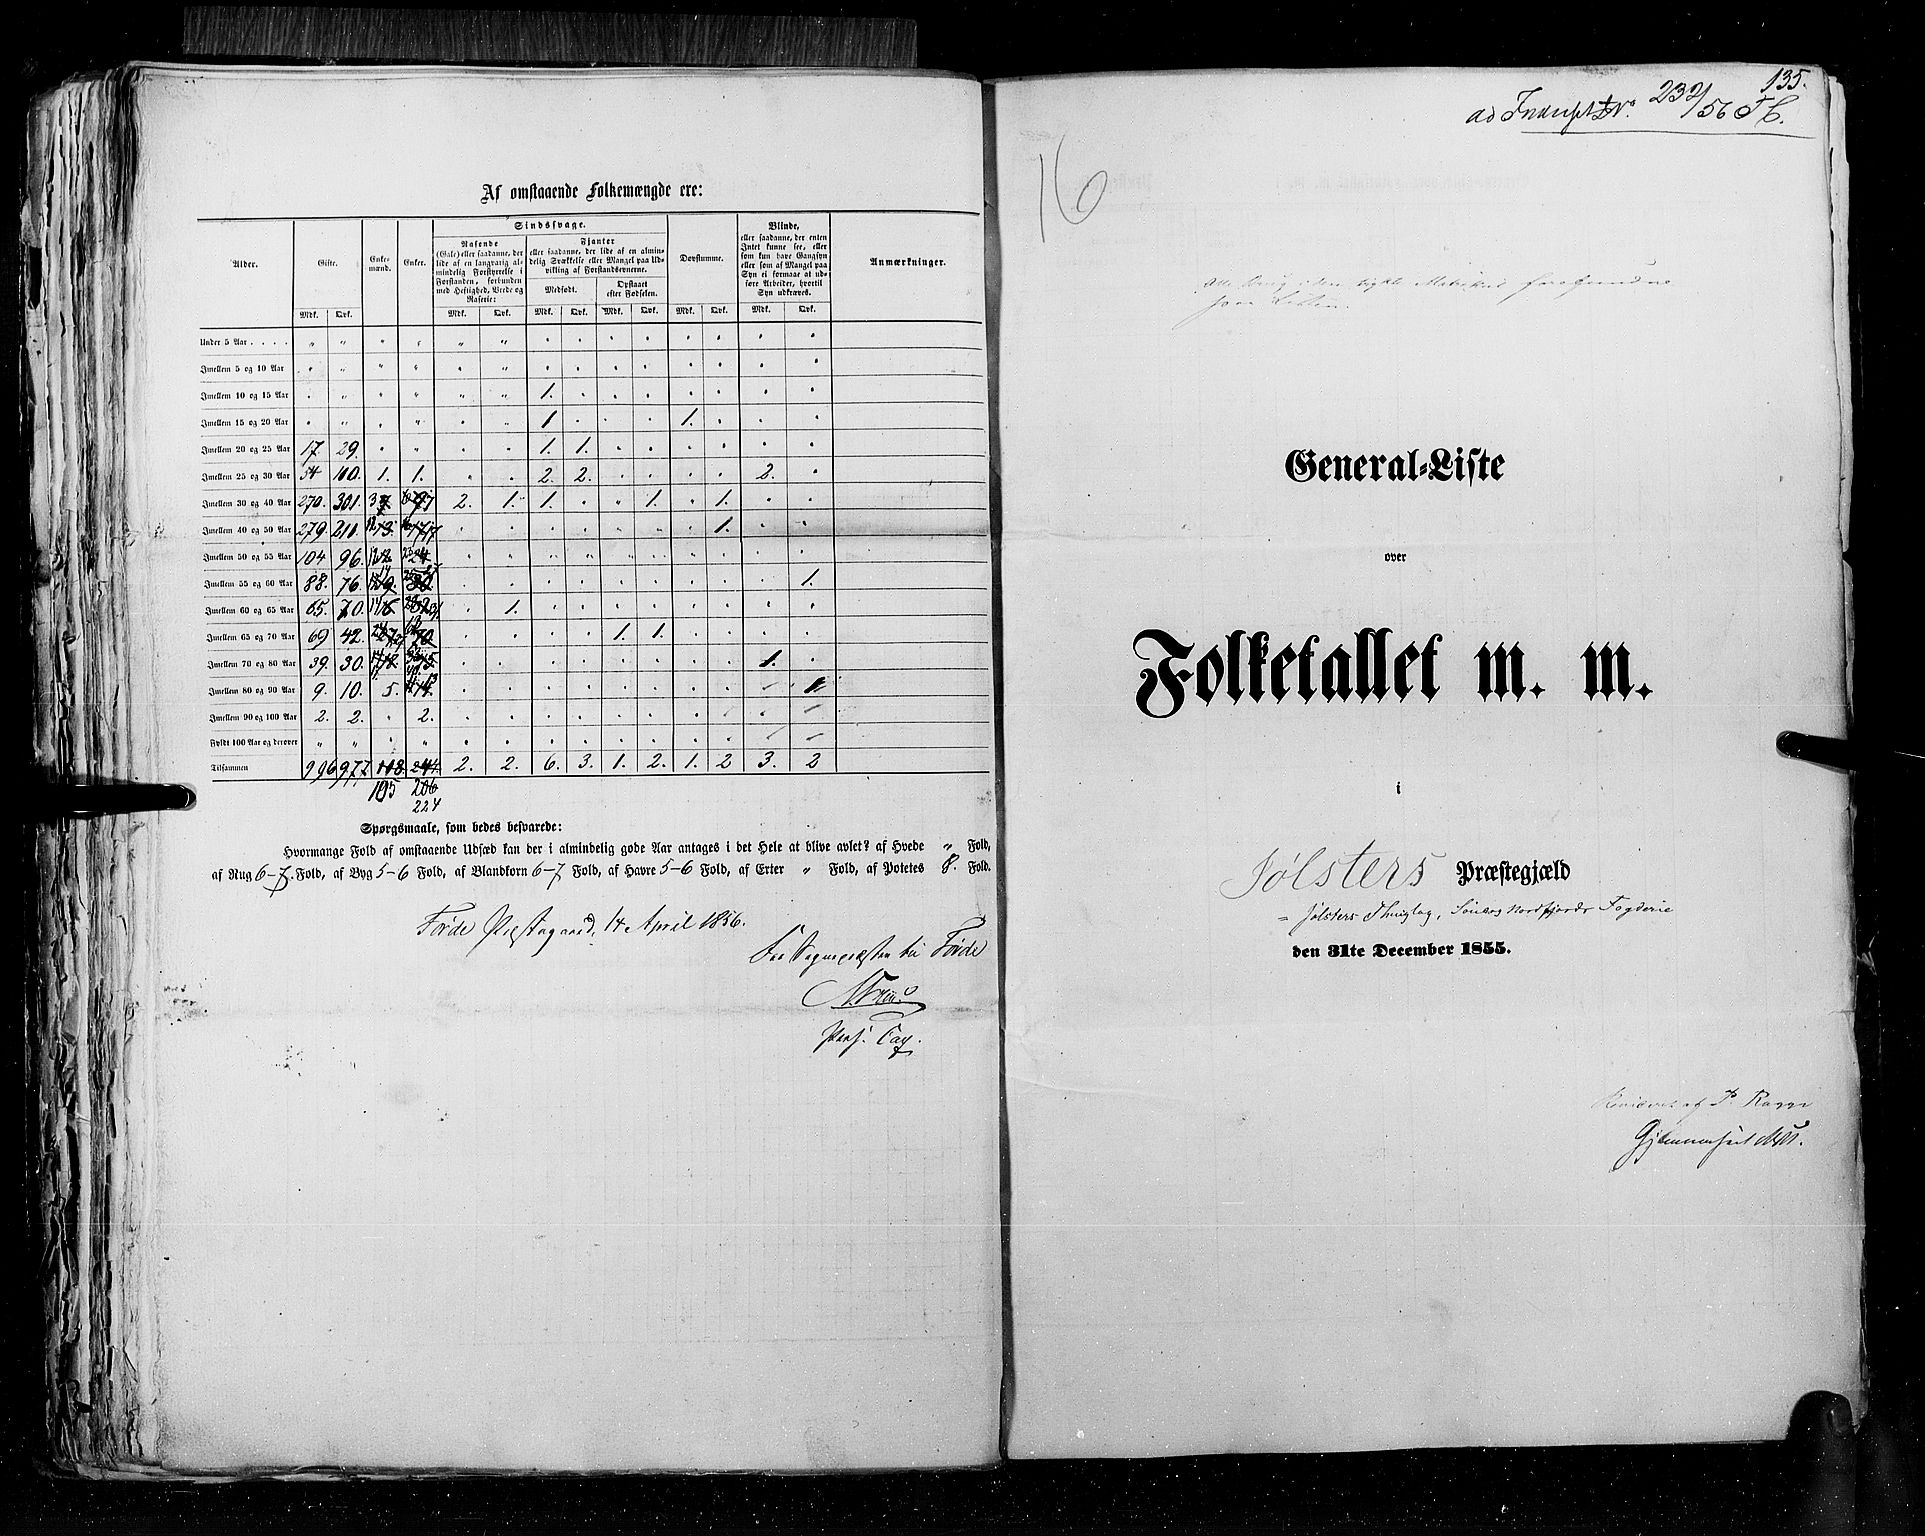 RA, Folketellingen 1855, bind 5: Nordre Bergenhus amt, Romsdal amt og Søndre Trondhjem amt, 1855, s. 135